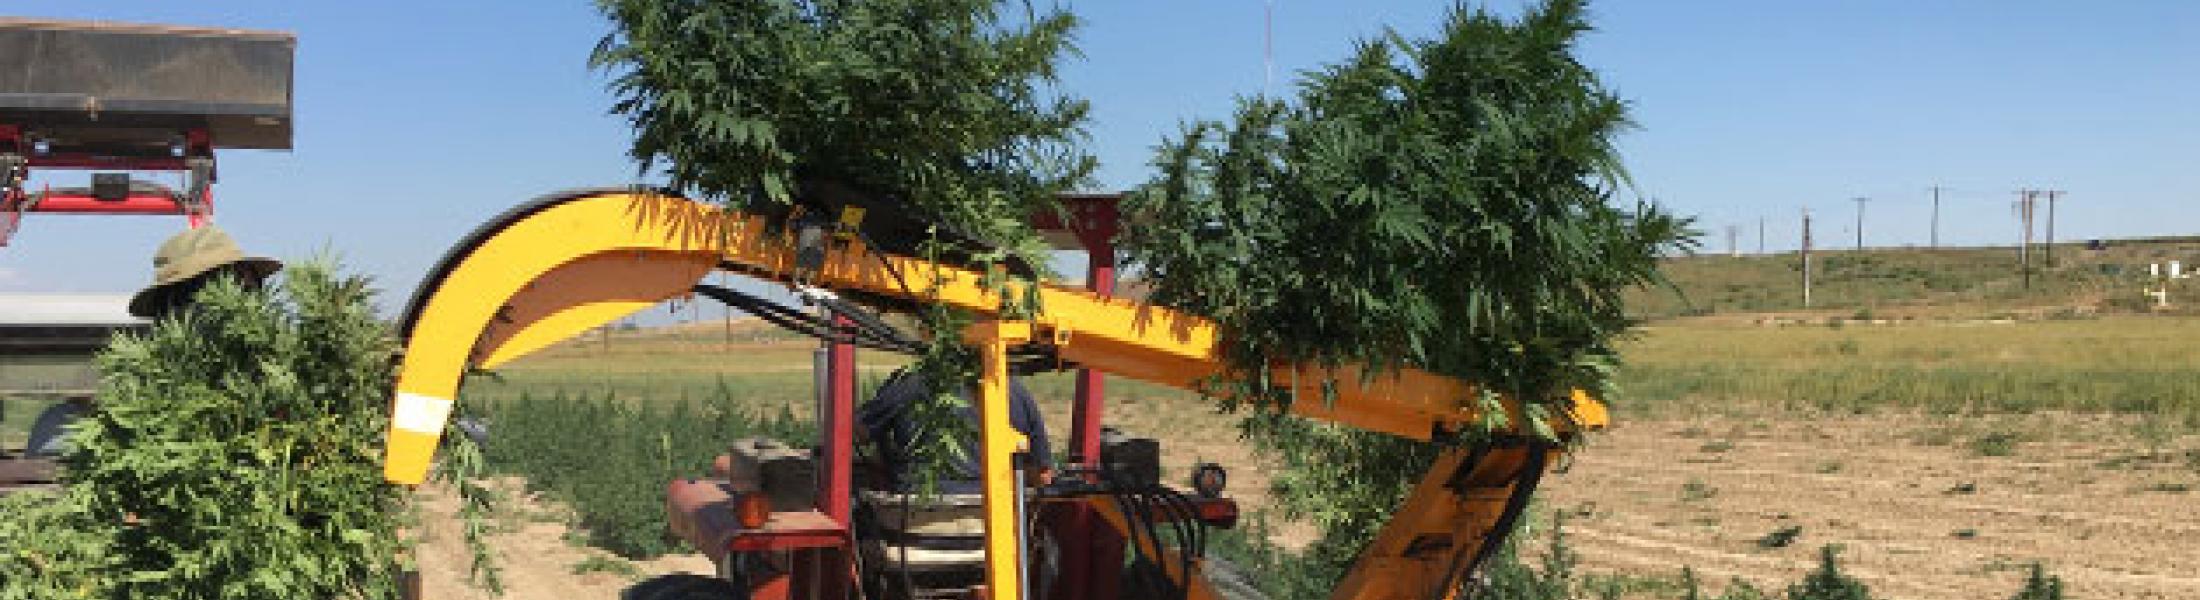 Hemp and Cannabis Plant Harvester